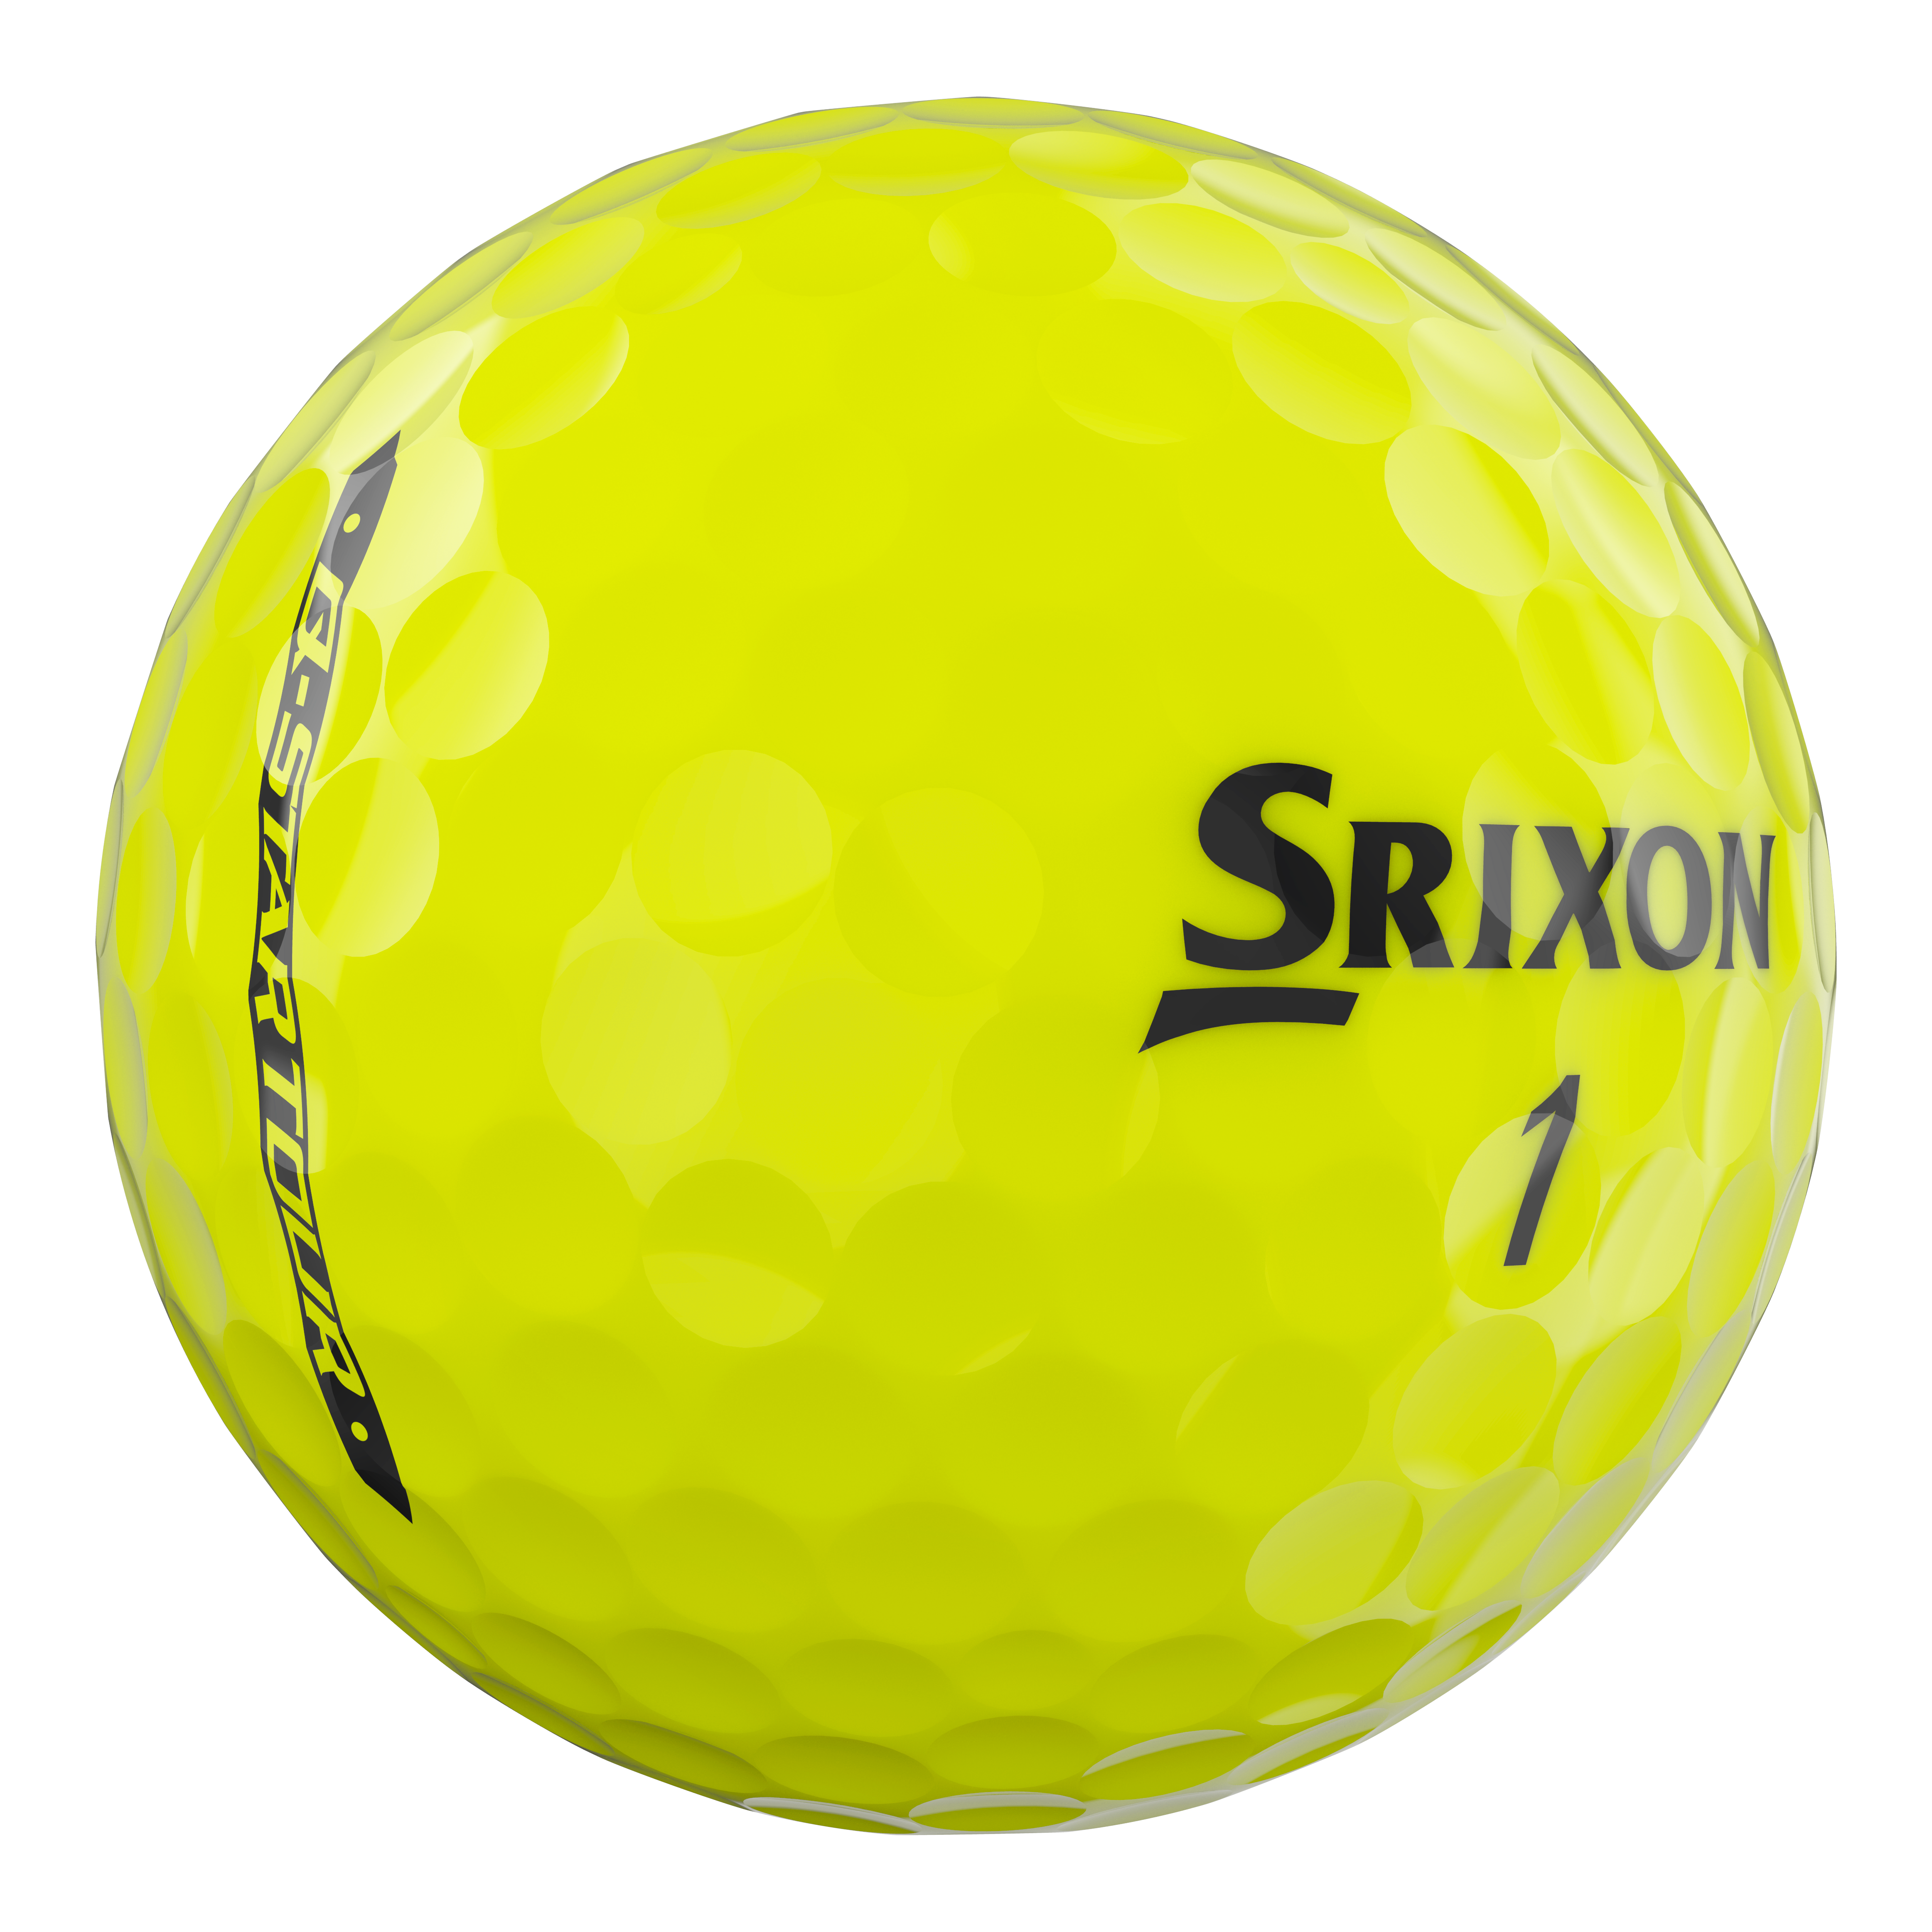 Srixon Q-Star Tour Golfbälle bedruckt, gelb (VPE à 12 Bälle)